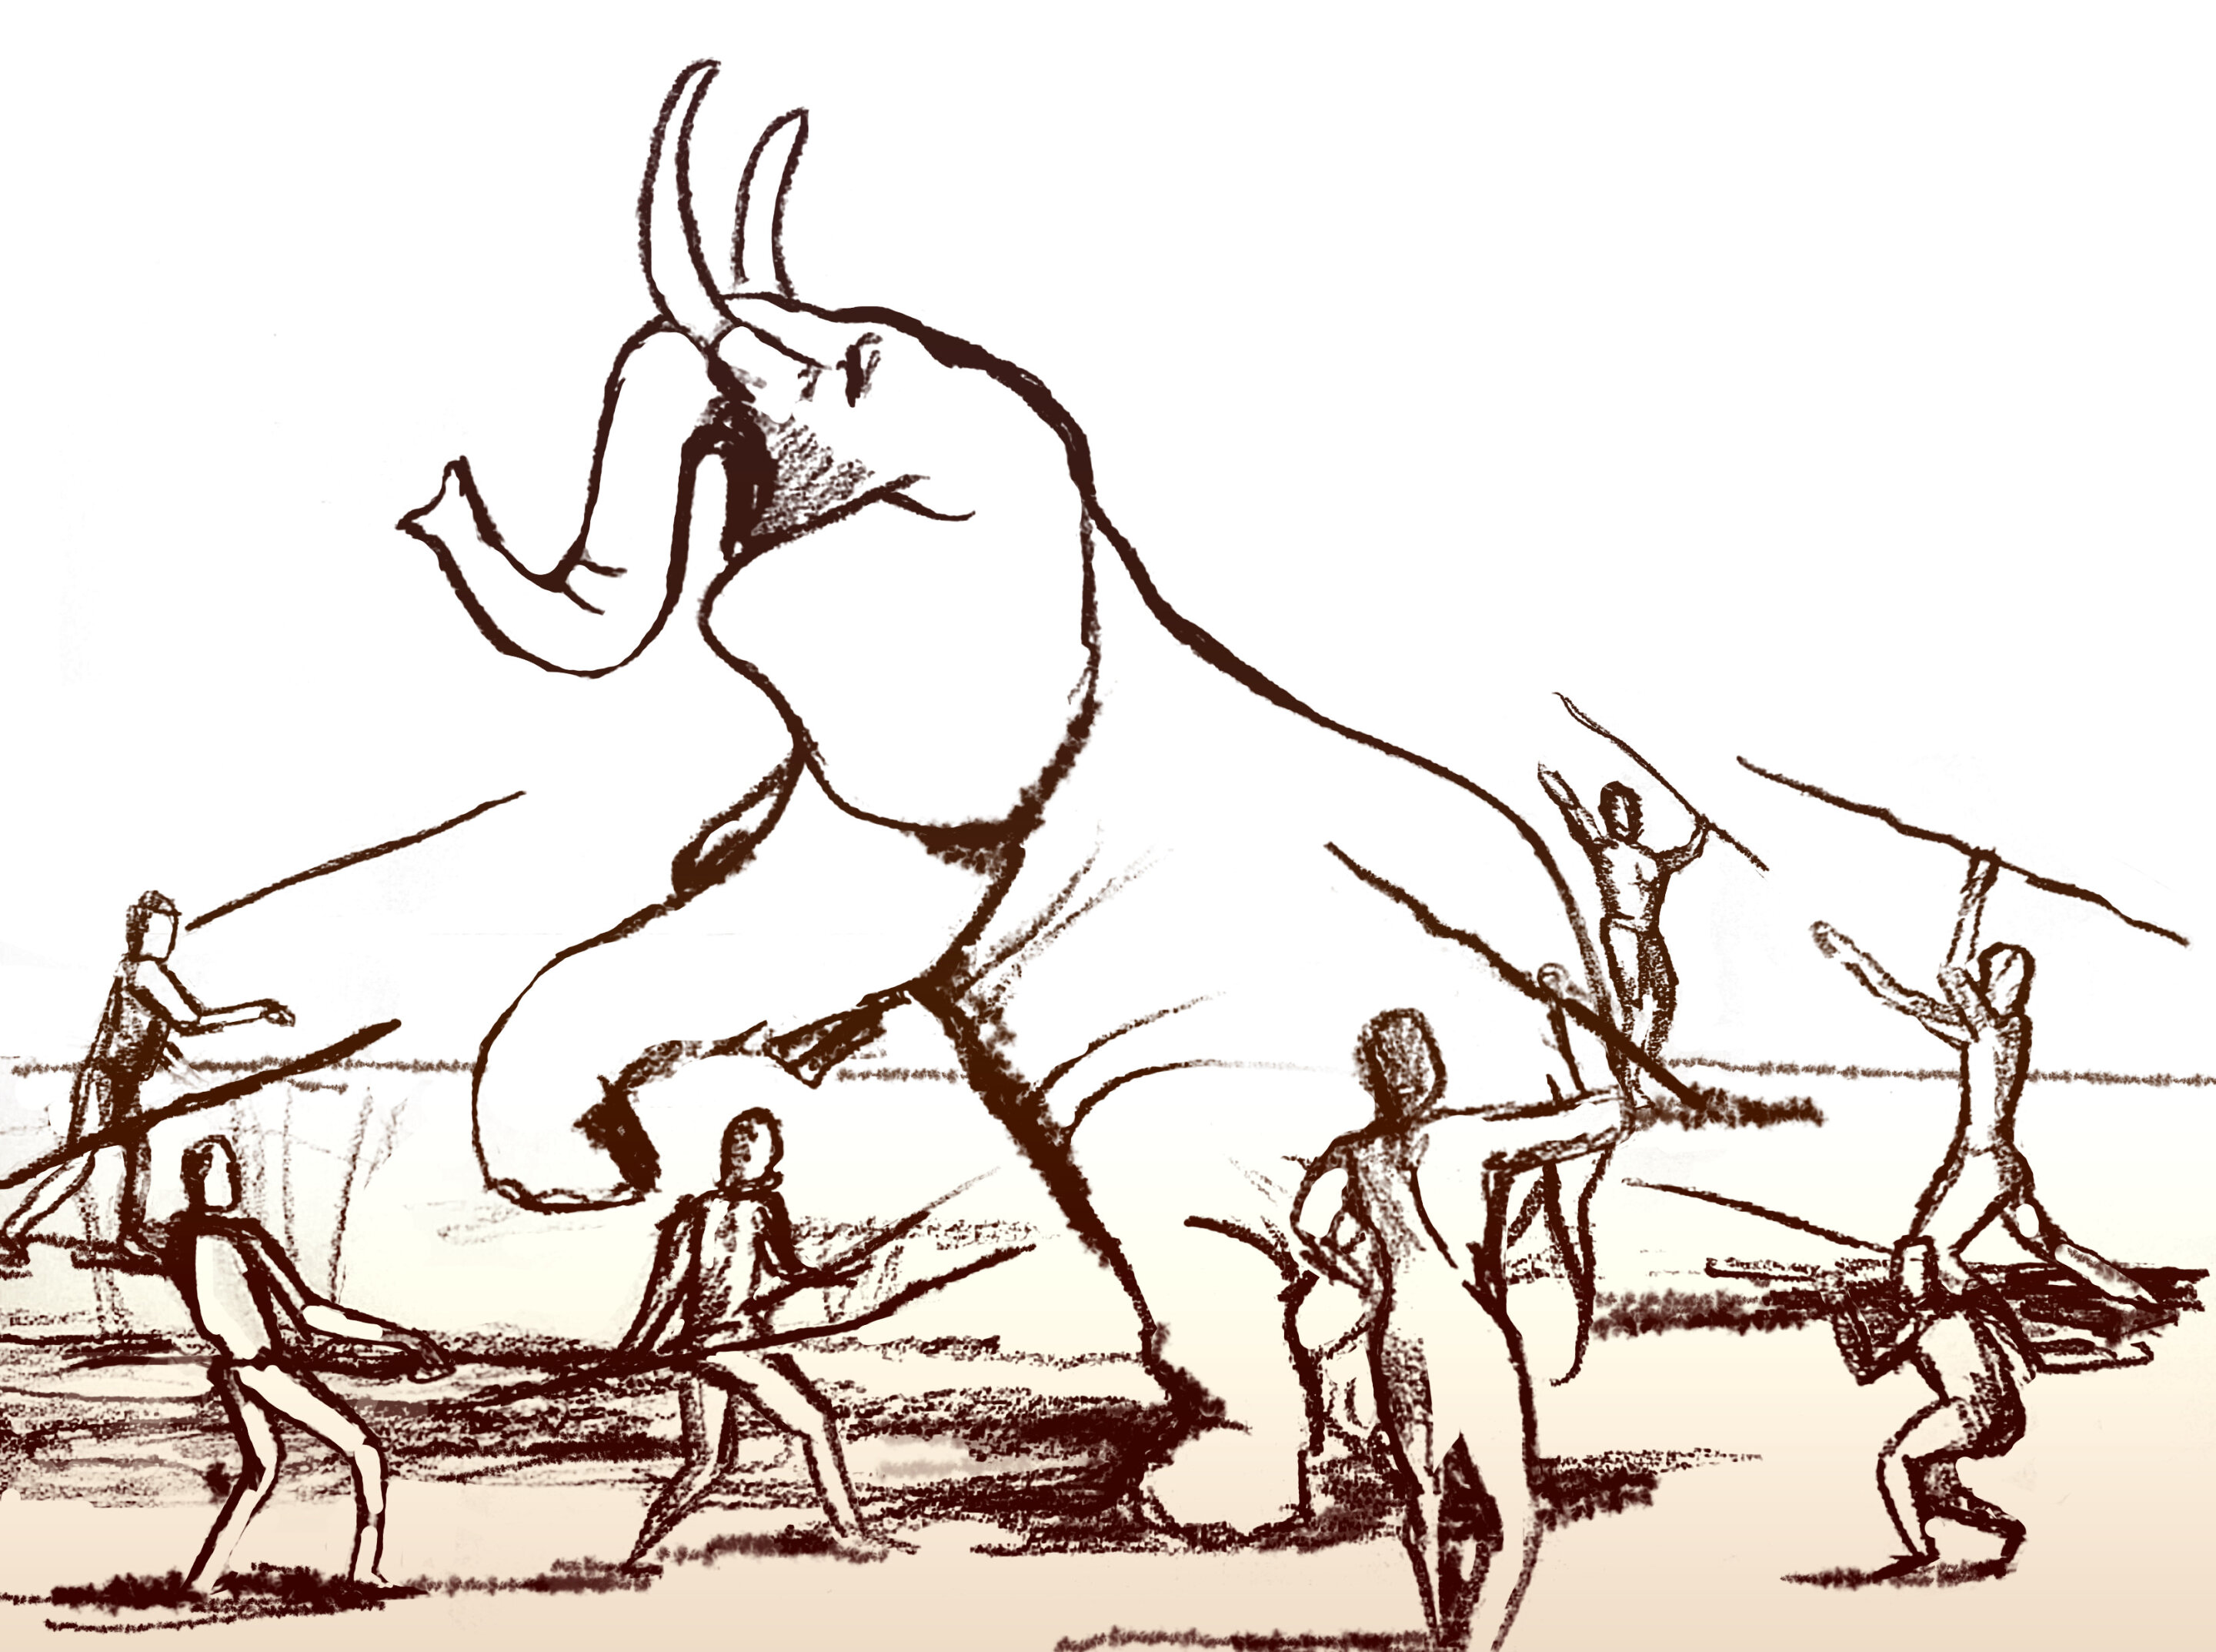 Lov pořádně velkého slona primitivní technologií. Kredit: Tel Aviv University.